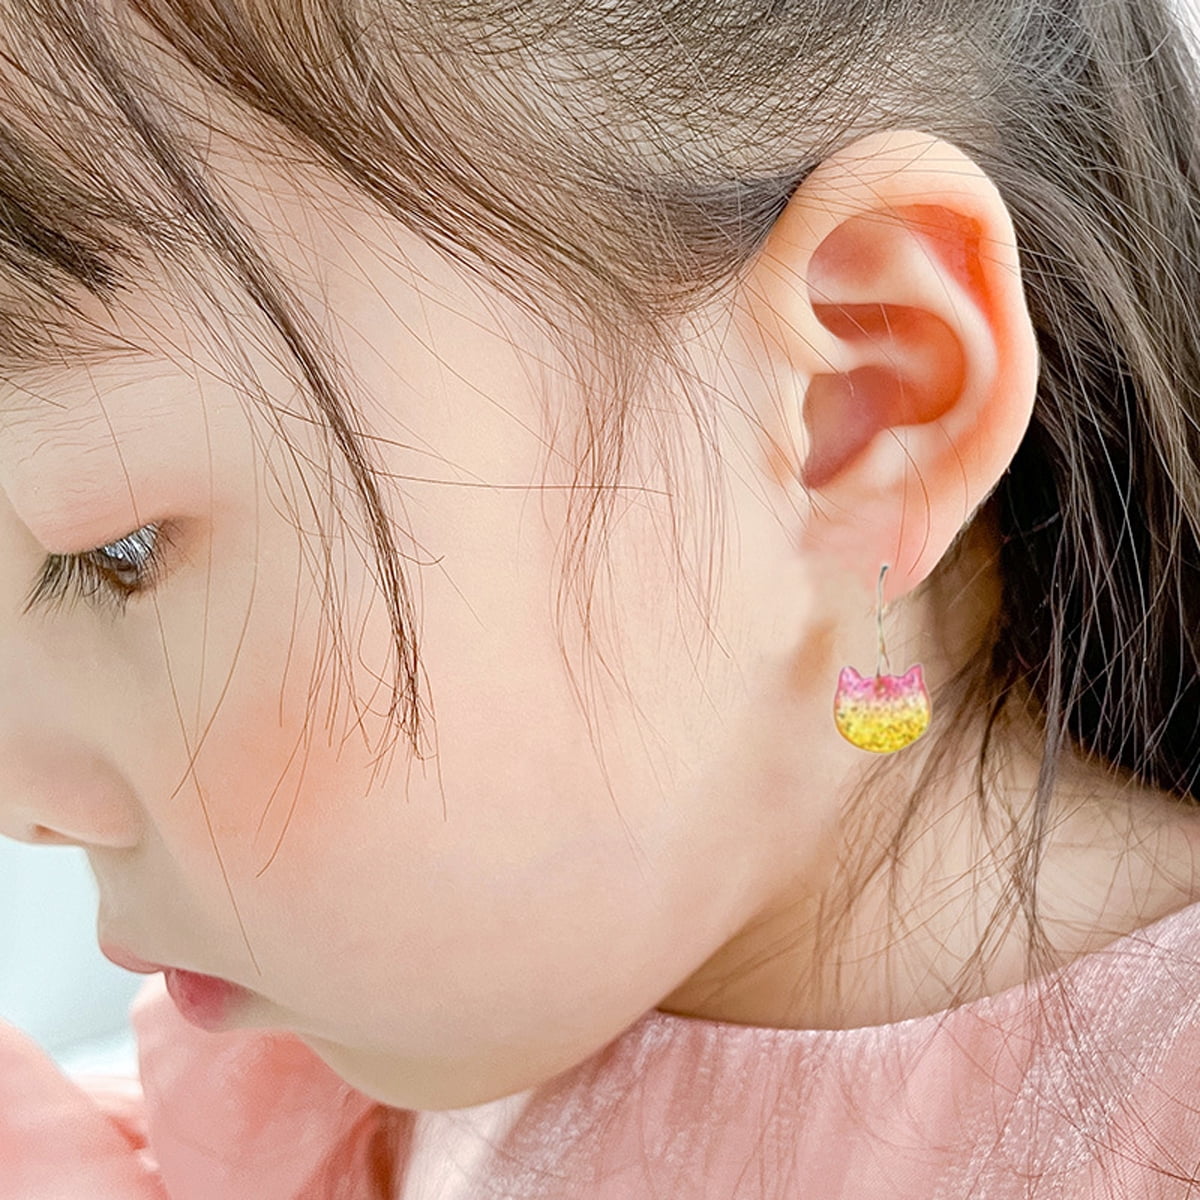 Buy Weird Earrings Cute Earrings Fun Earrings Cool Earrings Aesthetic  Earrings Abstract Face Earrings Star and Moon Earrings Lesbian Earrings  Long Drop Dangle Earrings for Girls and Women at Amazon.in